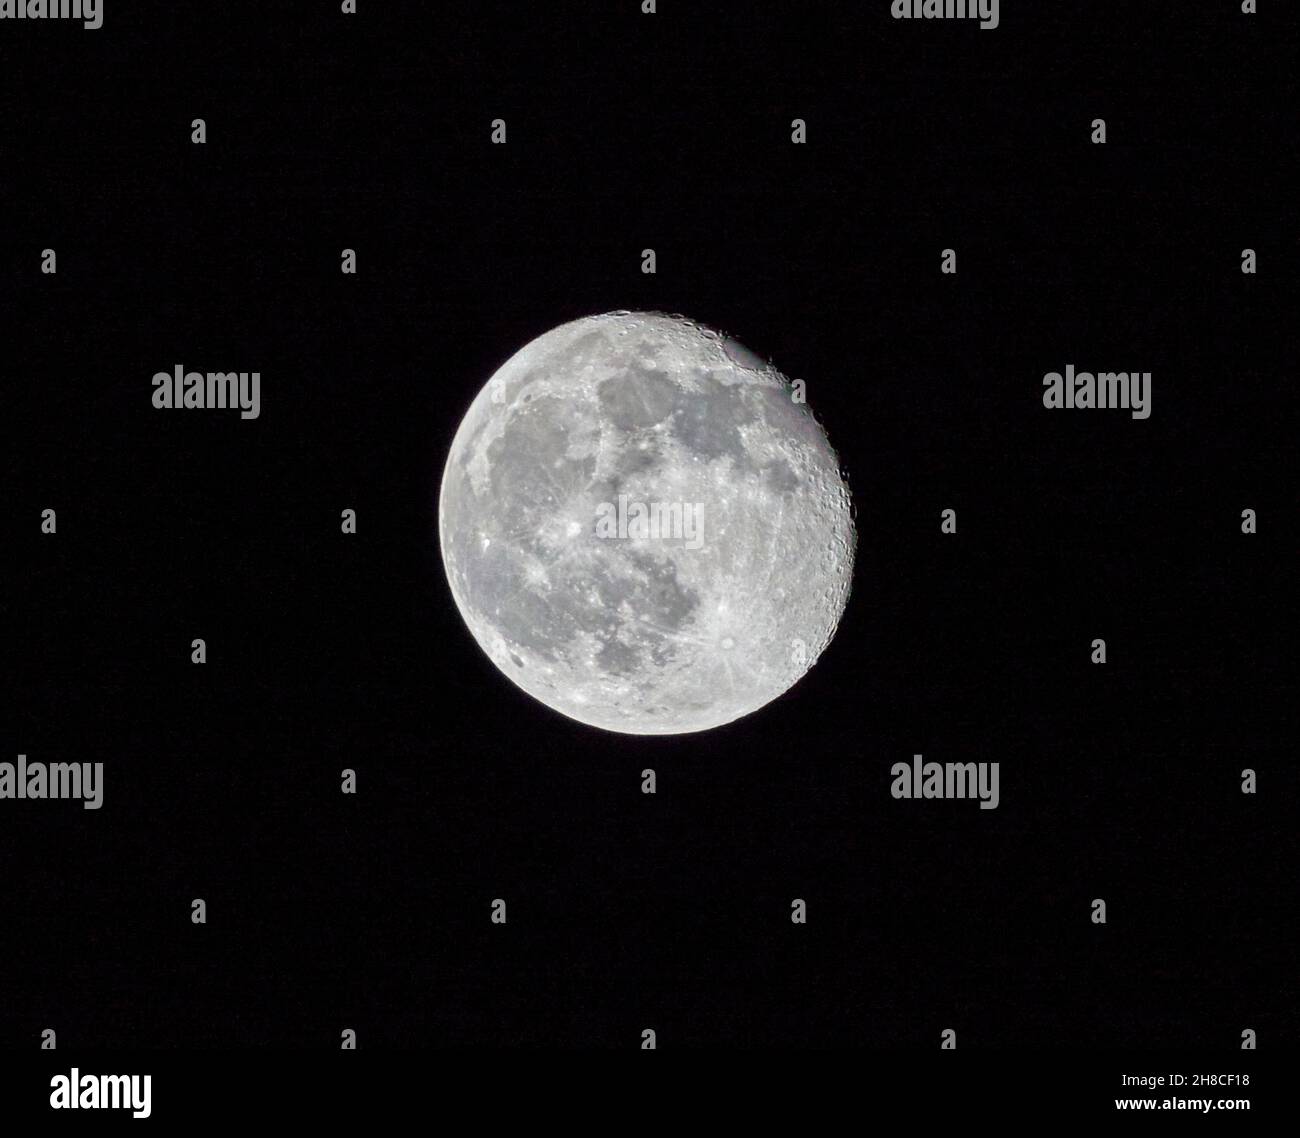 600mm colpo di luna gibbosa in declino 94.24% illuminato il 21/11/21 come visto da Park Terrace Lane Glasgow G3 6BQ alle 22:34 GMT Foto Stock